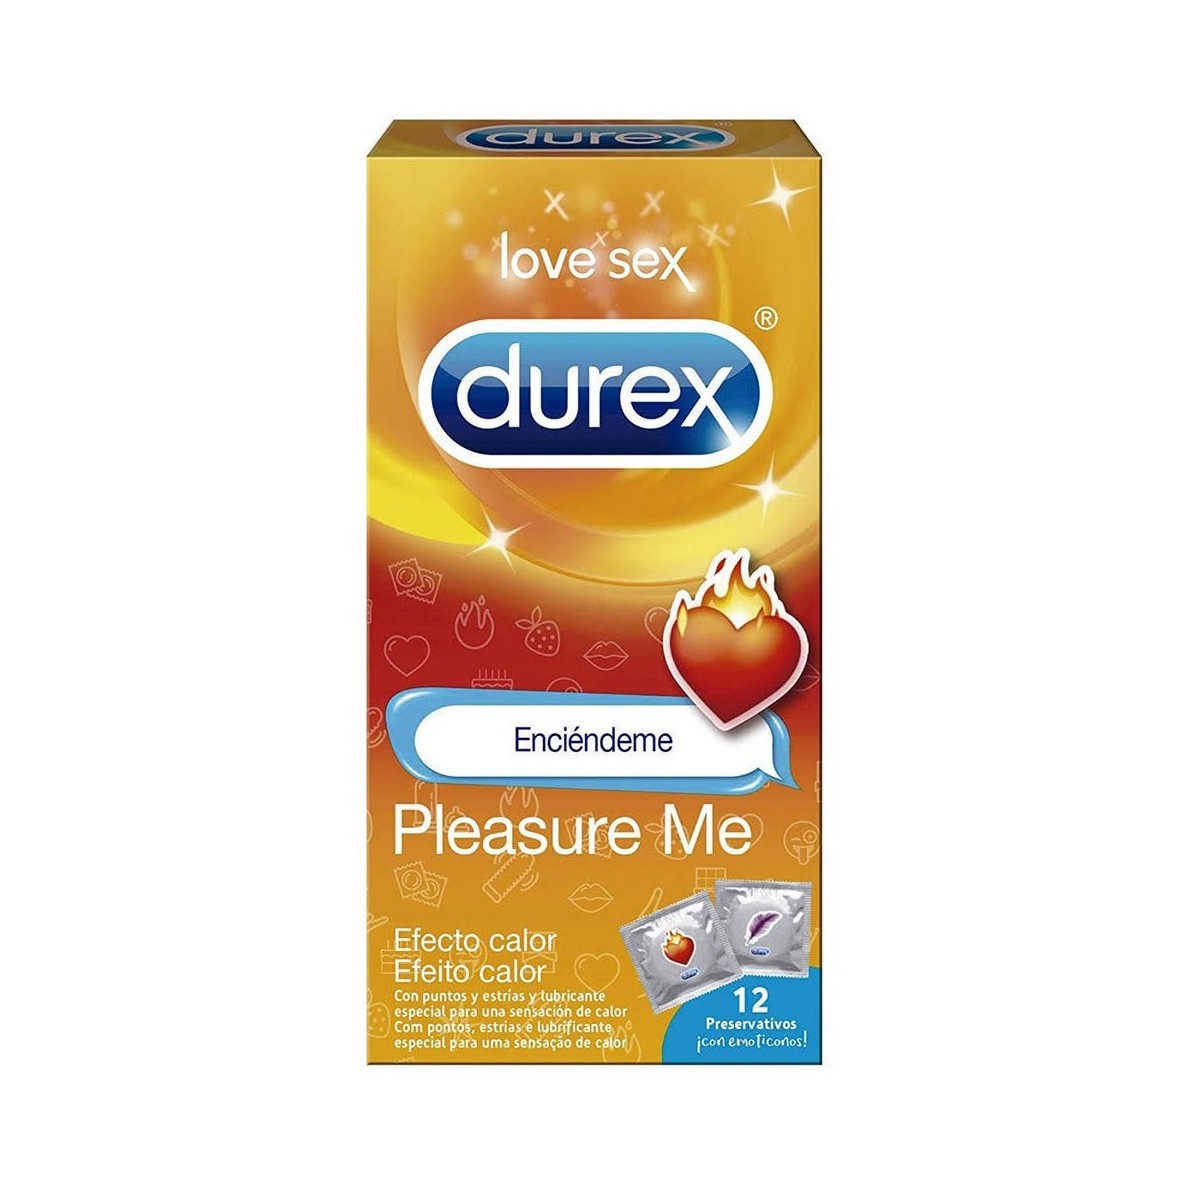 durex-pleasure-me-efecto-calor-12-preservativos